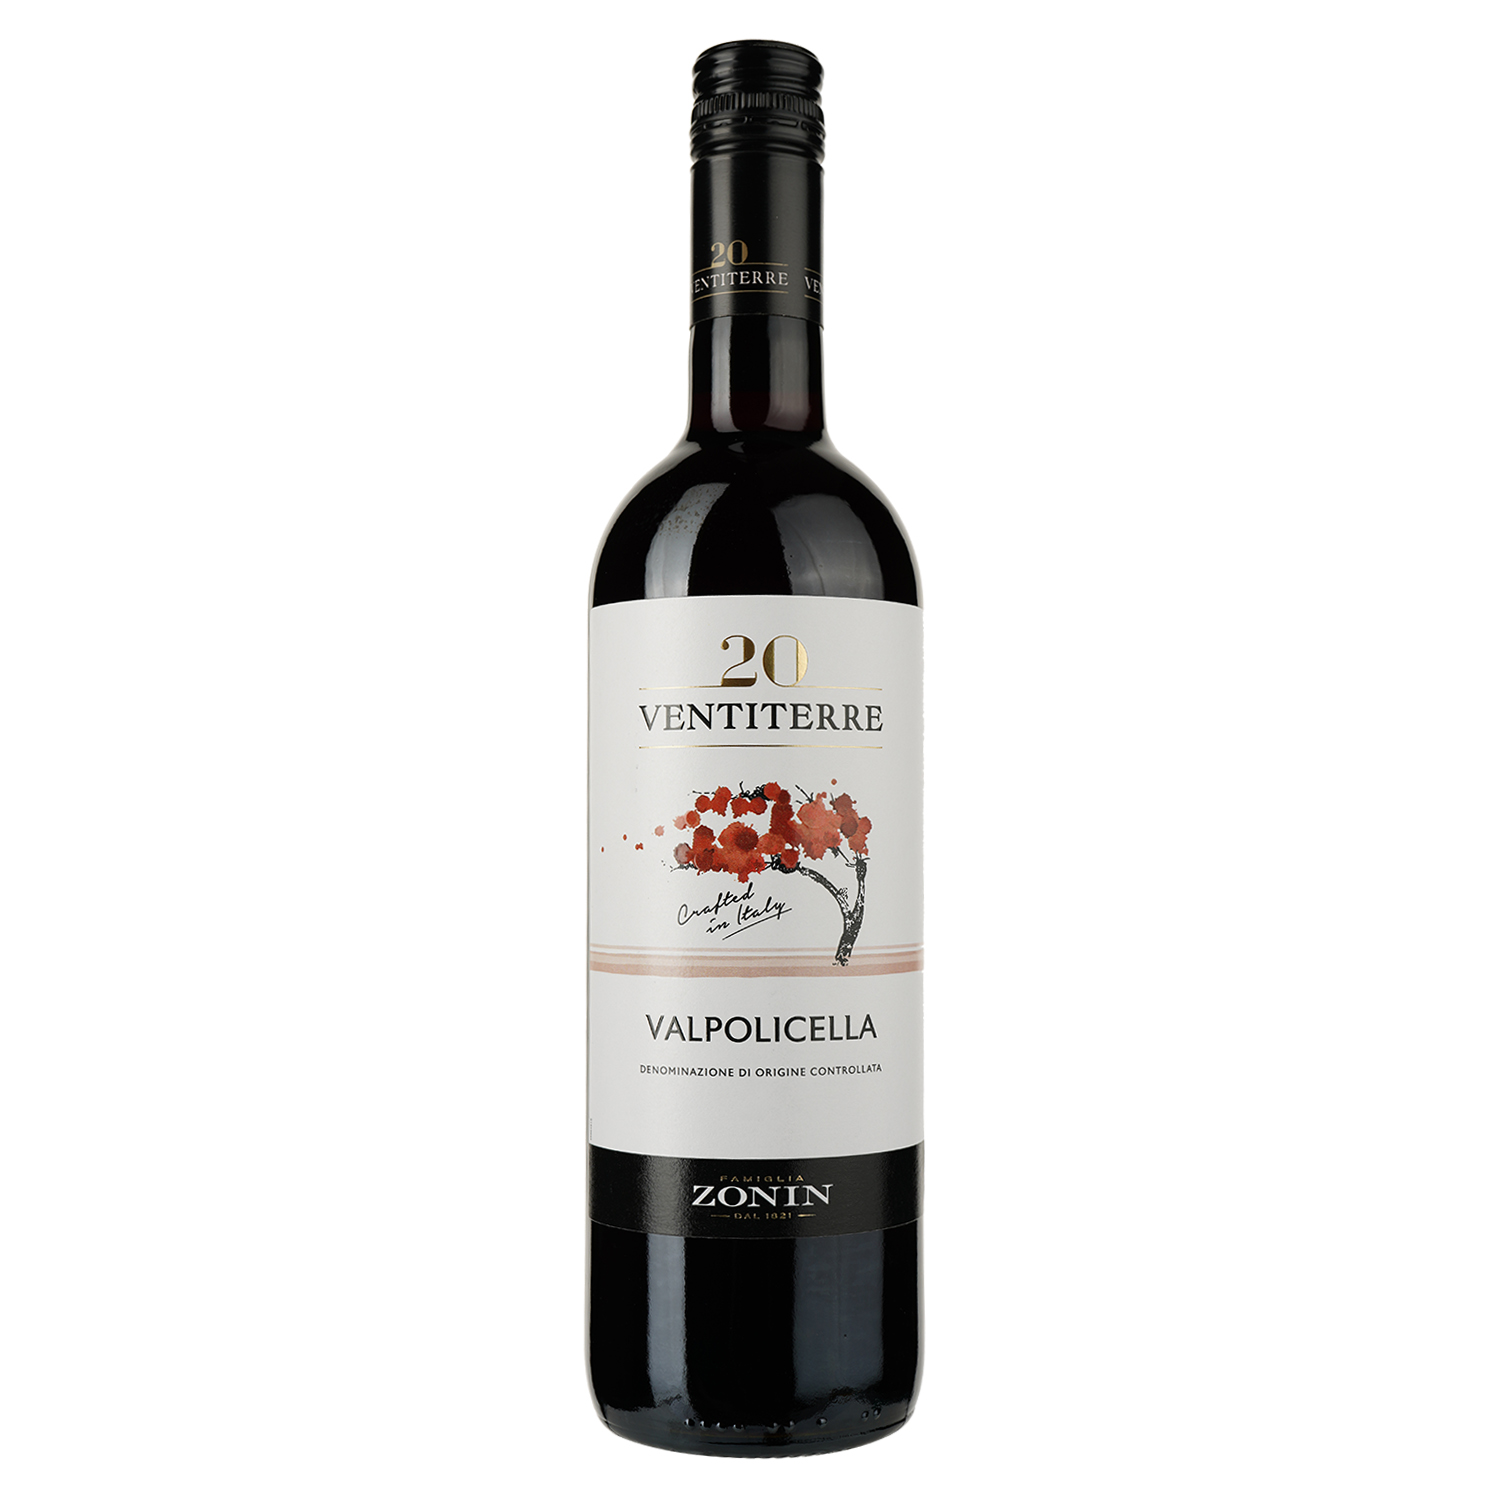 Вино Zonin Valpolicella 20 Ventiterre, червоне, сухе, 0,75 л - фото 1